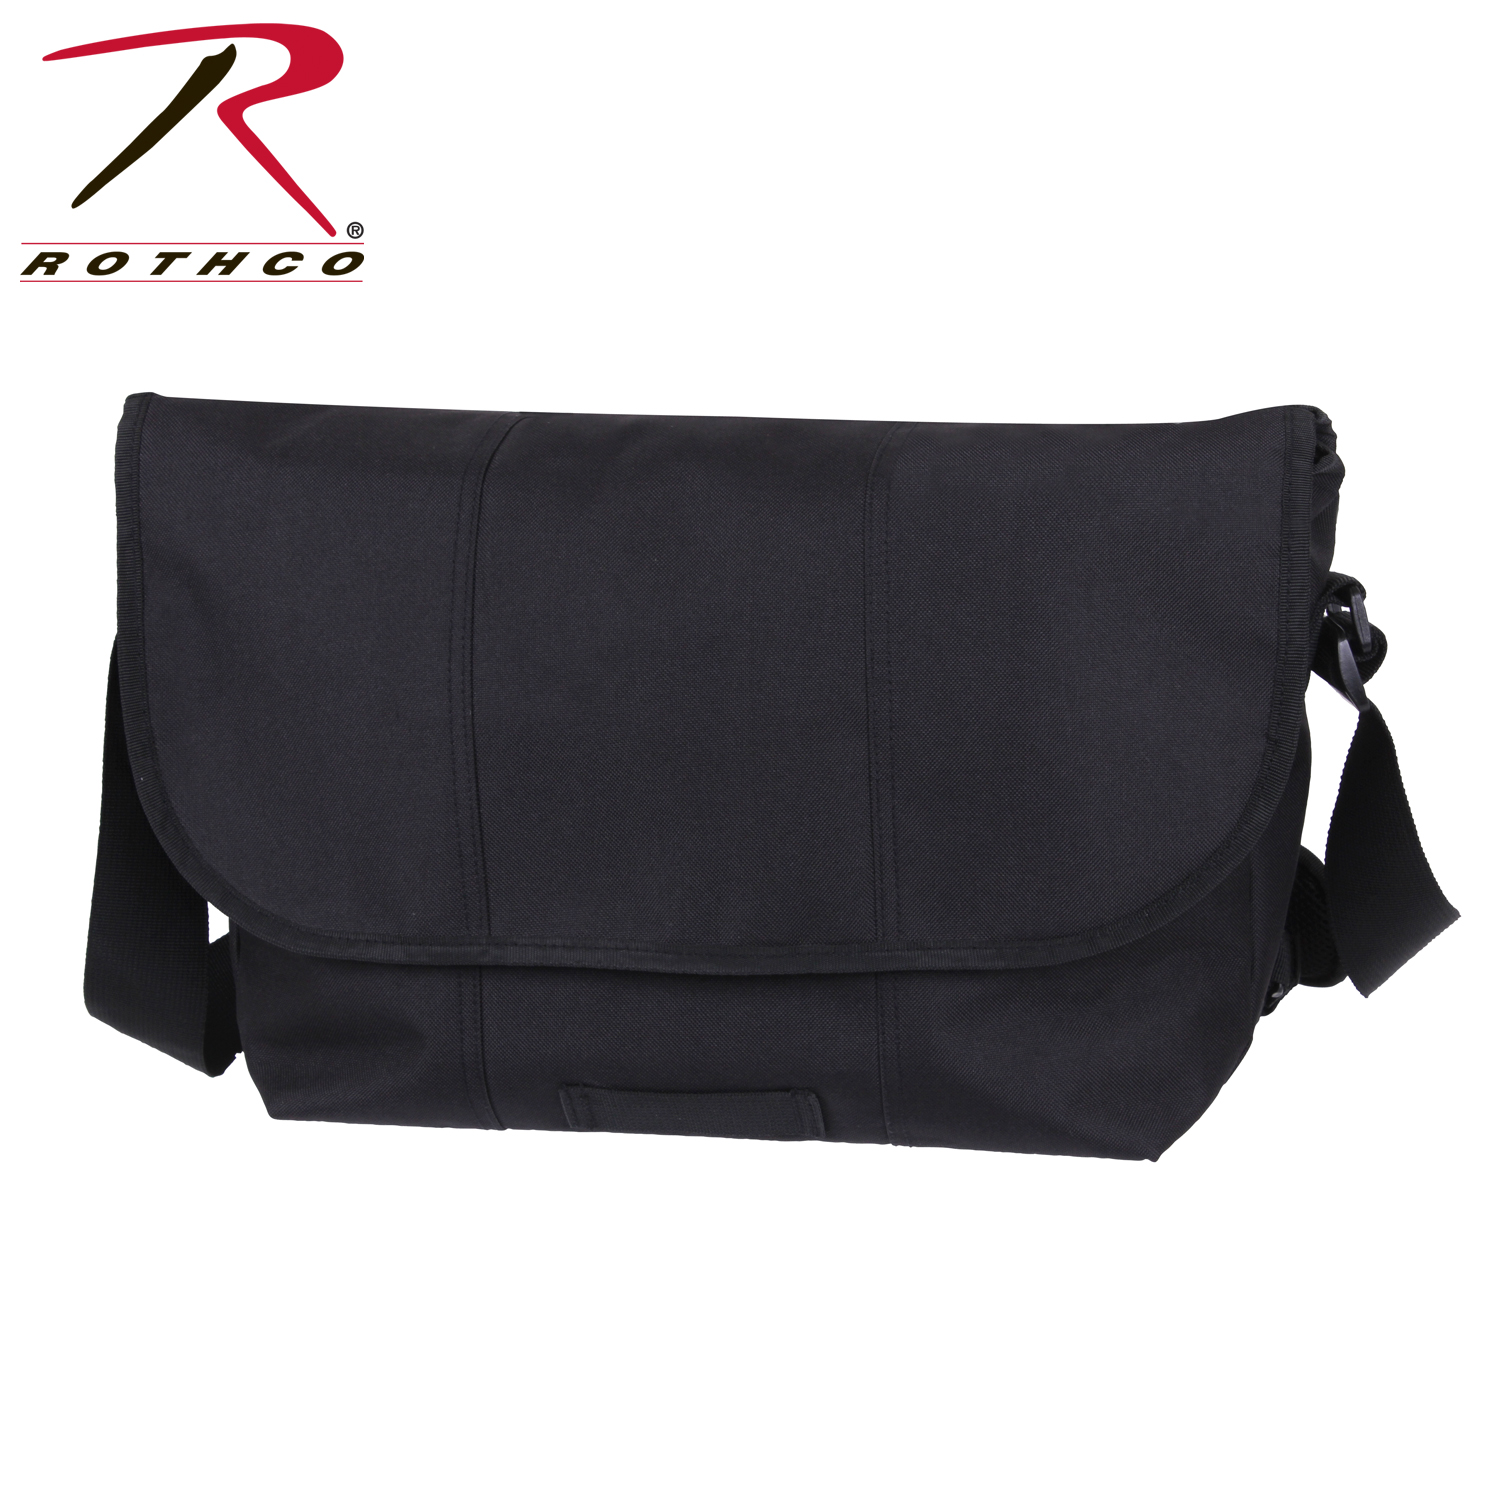 Rothco Polyester Elusion Messenger Bag